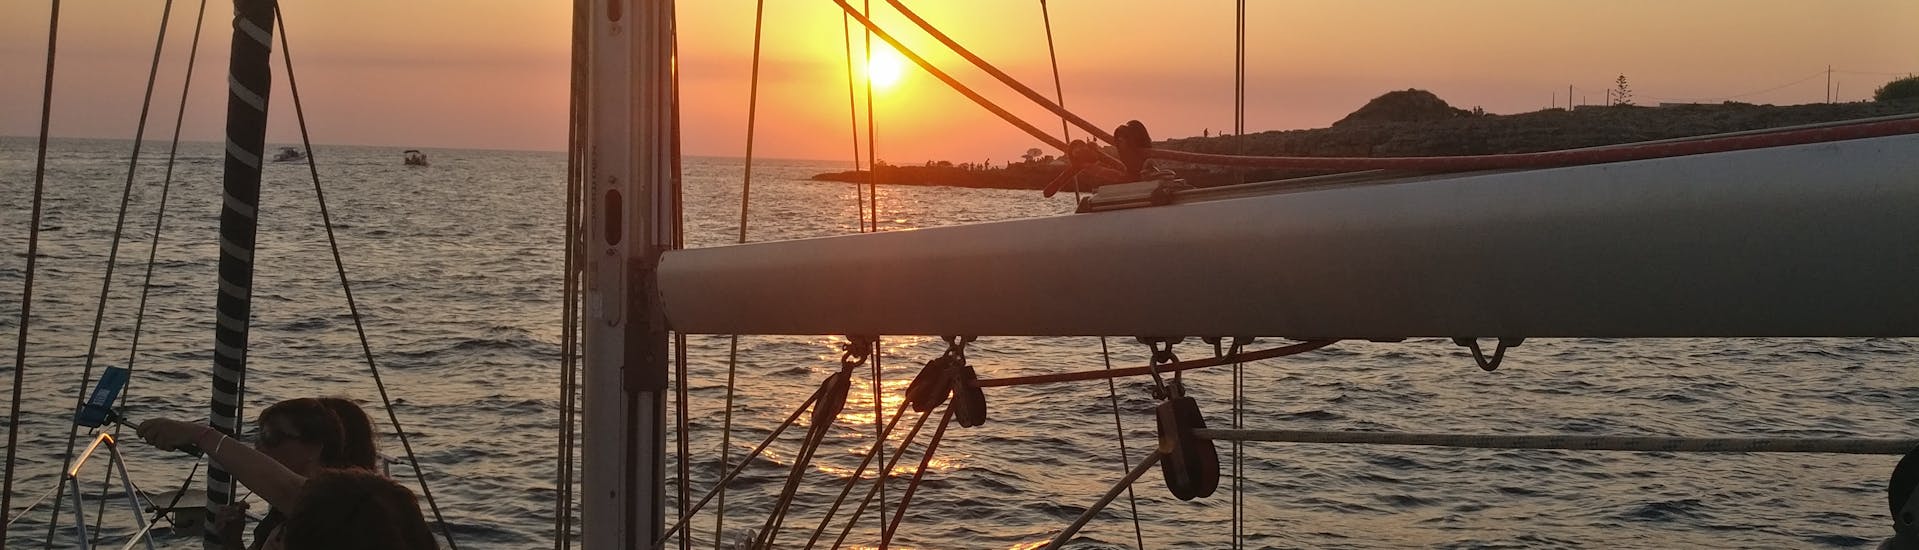 Tramonto dalla barca durante la Gita in barca a vela al tramonto da Leuca alla costa del Salento con aperitivo con 40° Parallelo Leuca.